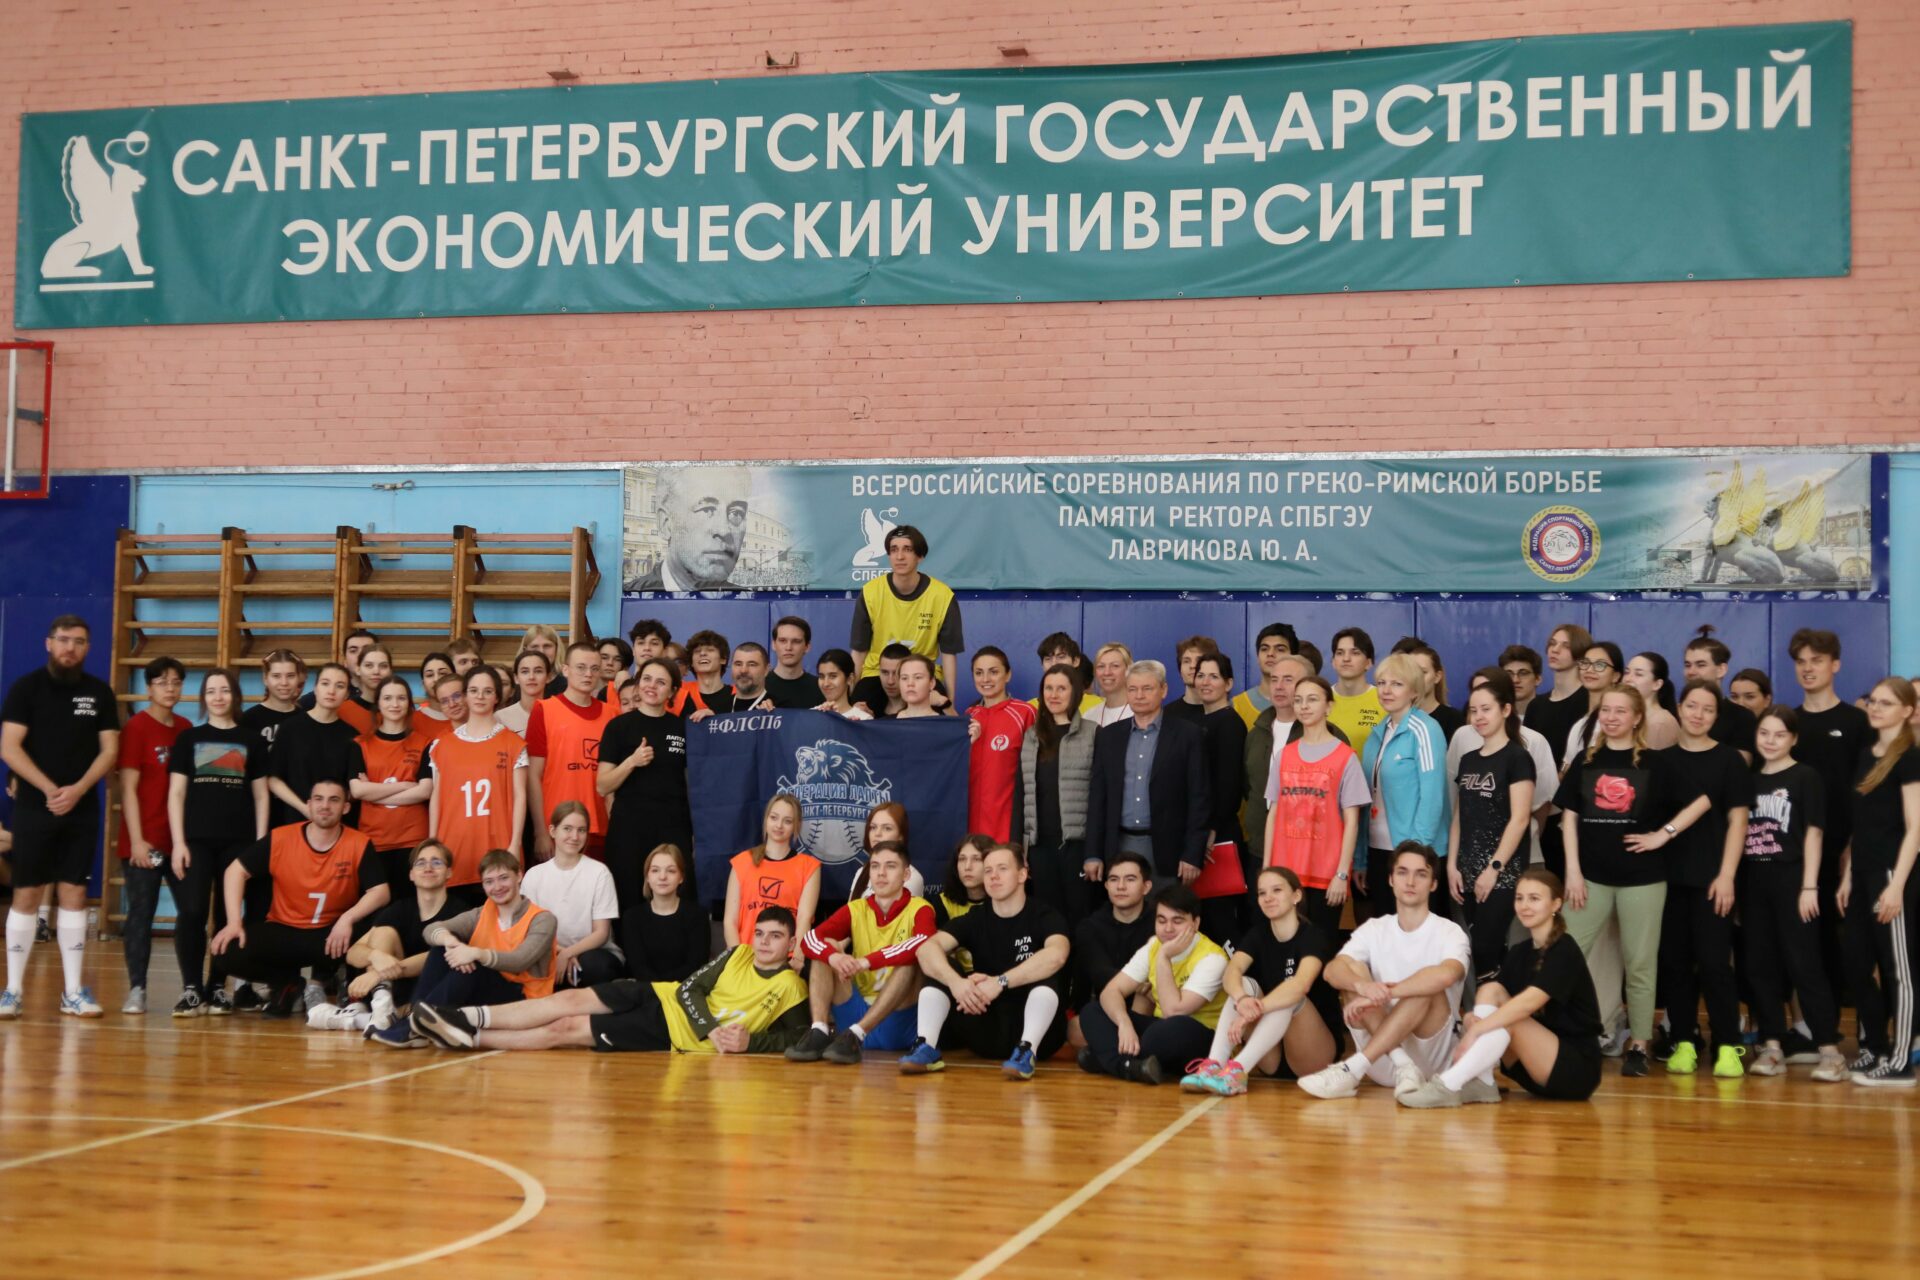 Кафедра физической культуры организовала мастер-класс по лапте